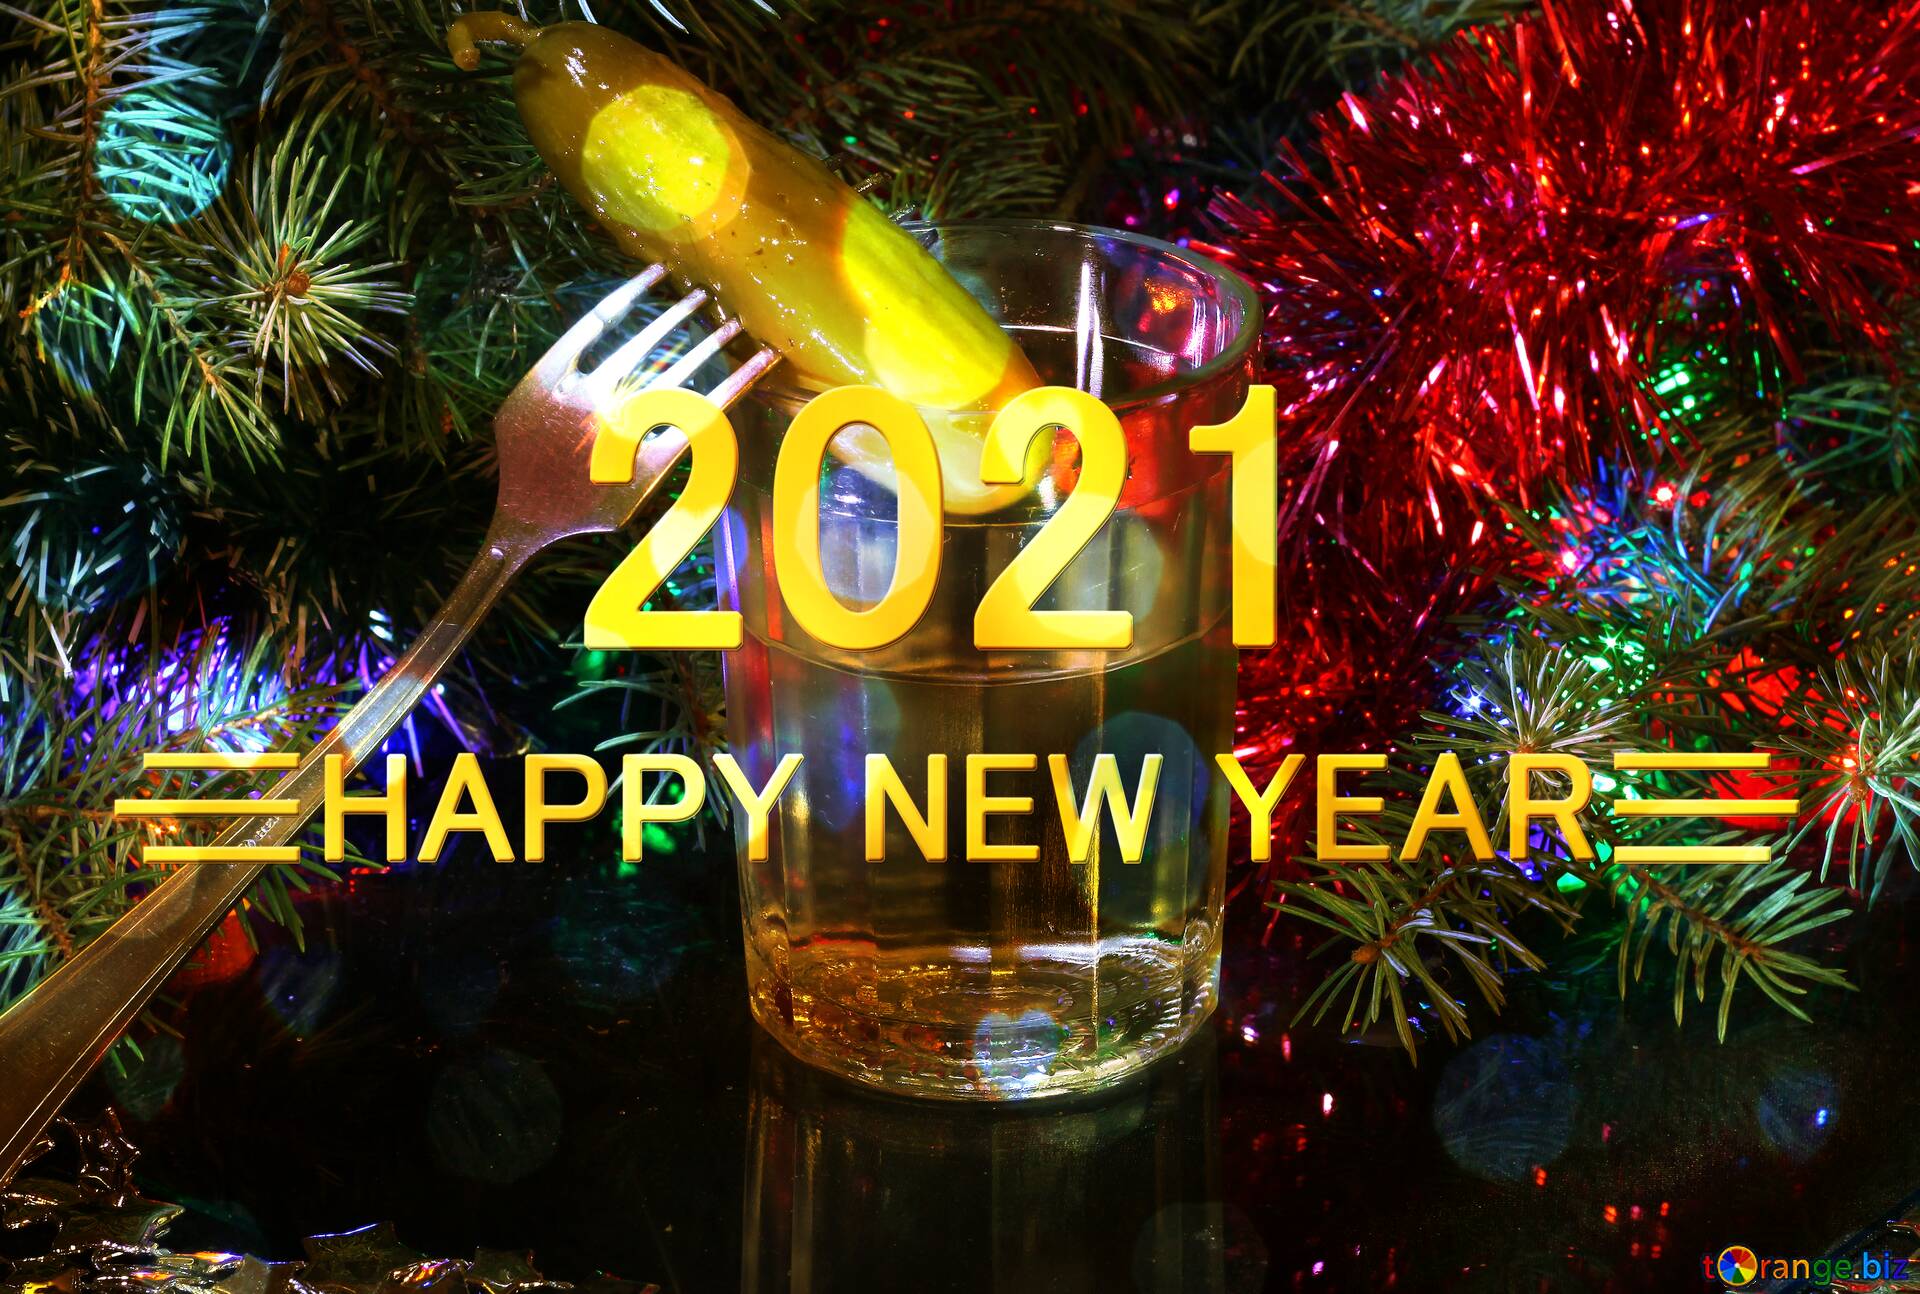 免费图片shiny happy new year 2021 background russian vodka and